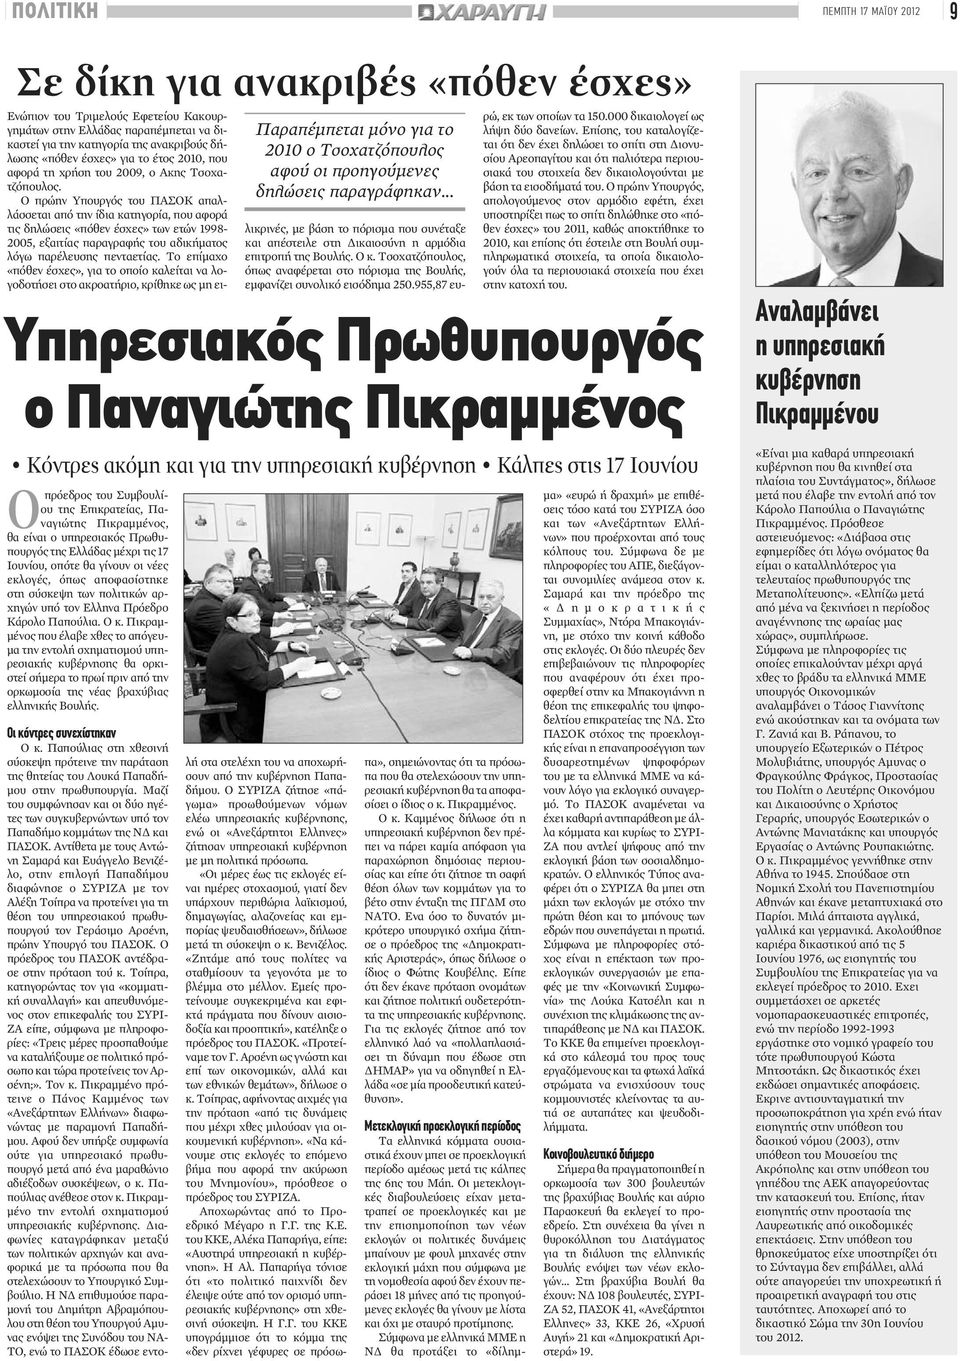 Τσοχατζόπουλος. Ο πρώην Υπουργός του ΠΑΣΟΚ απαλλάσσεται από την ίδια κατηγορία, που αφορά τις δηλώσεις «πόθεν έσχες» των ετών 1998-2005, εξαιτίας παραγραφής του αδικήματος λόγω παρέλευσης πενταετίας.